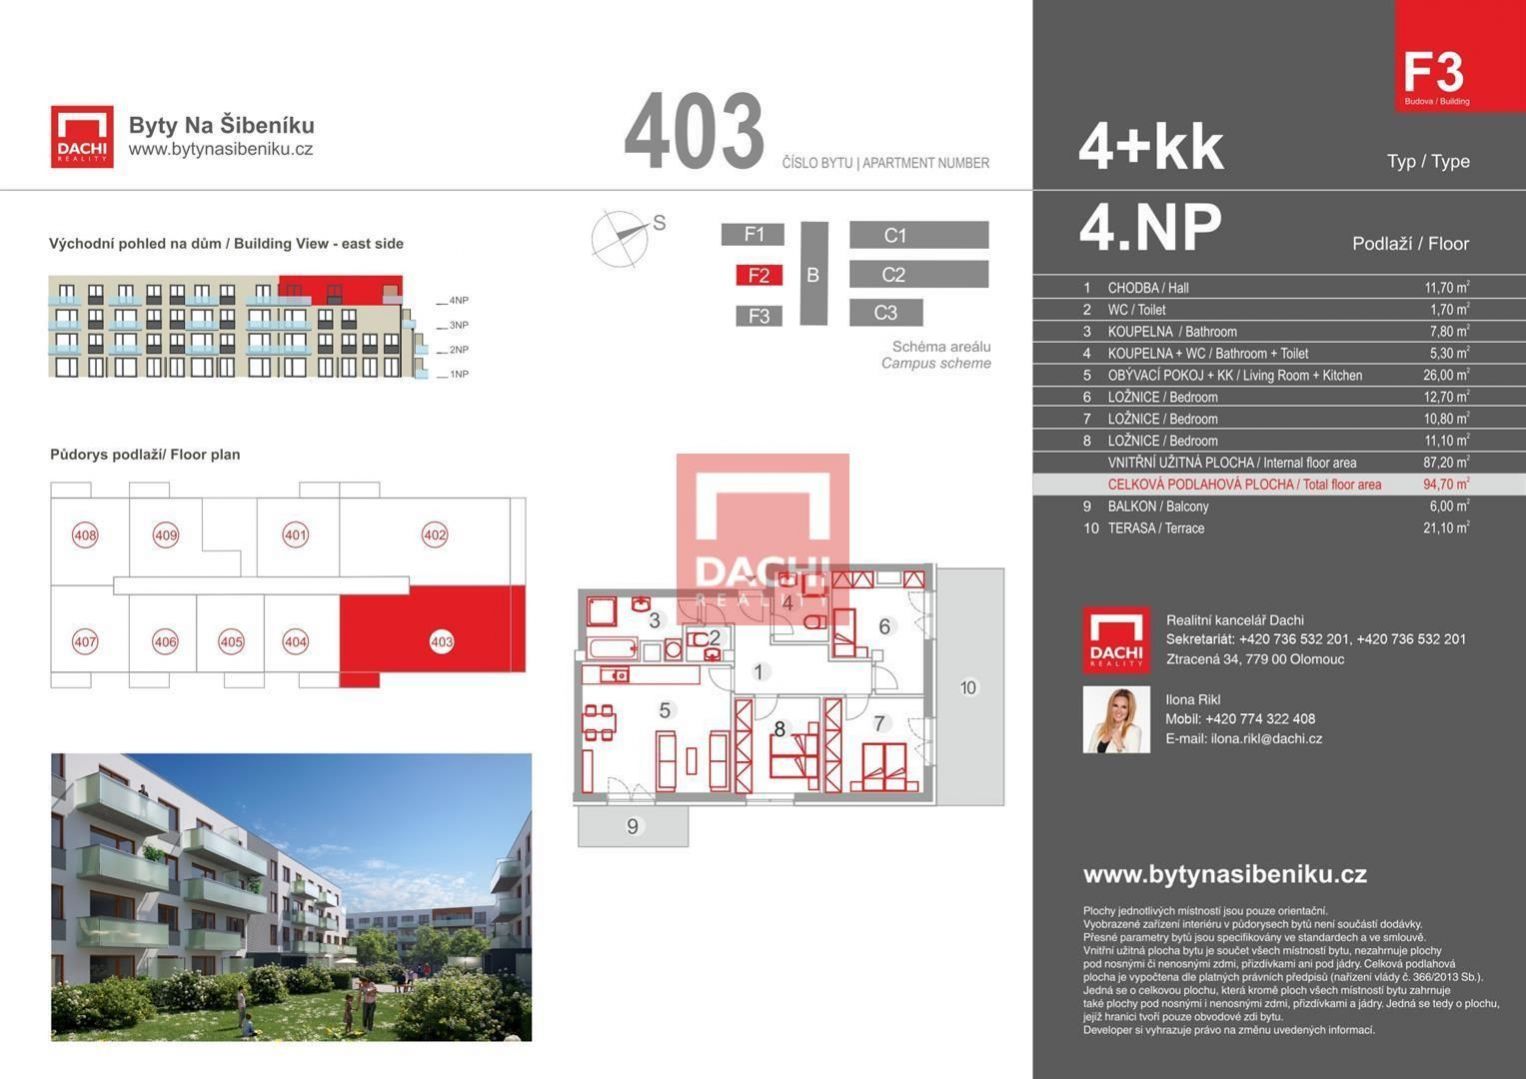 Prodej novostavby bytu F3.403  4+kk 94,7m s balkonem i terasou, Olomouc, Byty Na Šibeníku II.etapa, obrázek č. 3